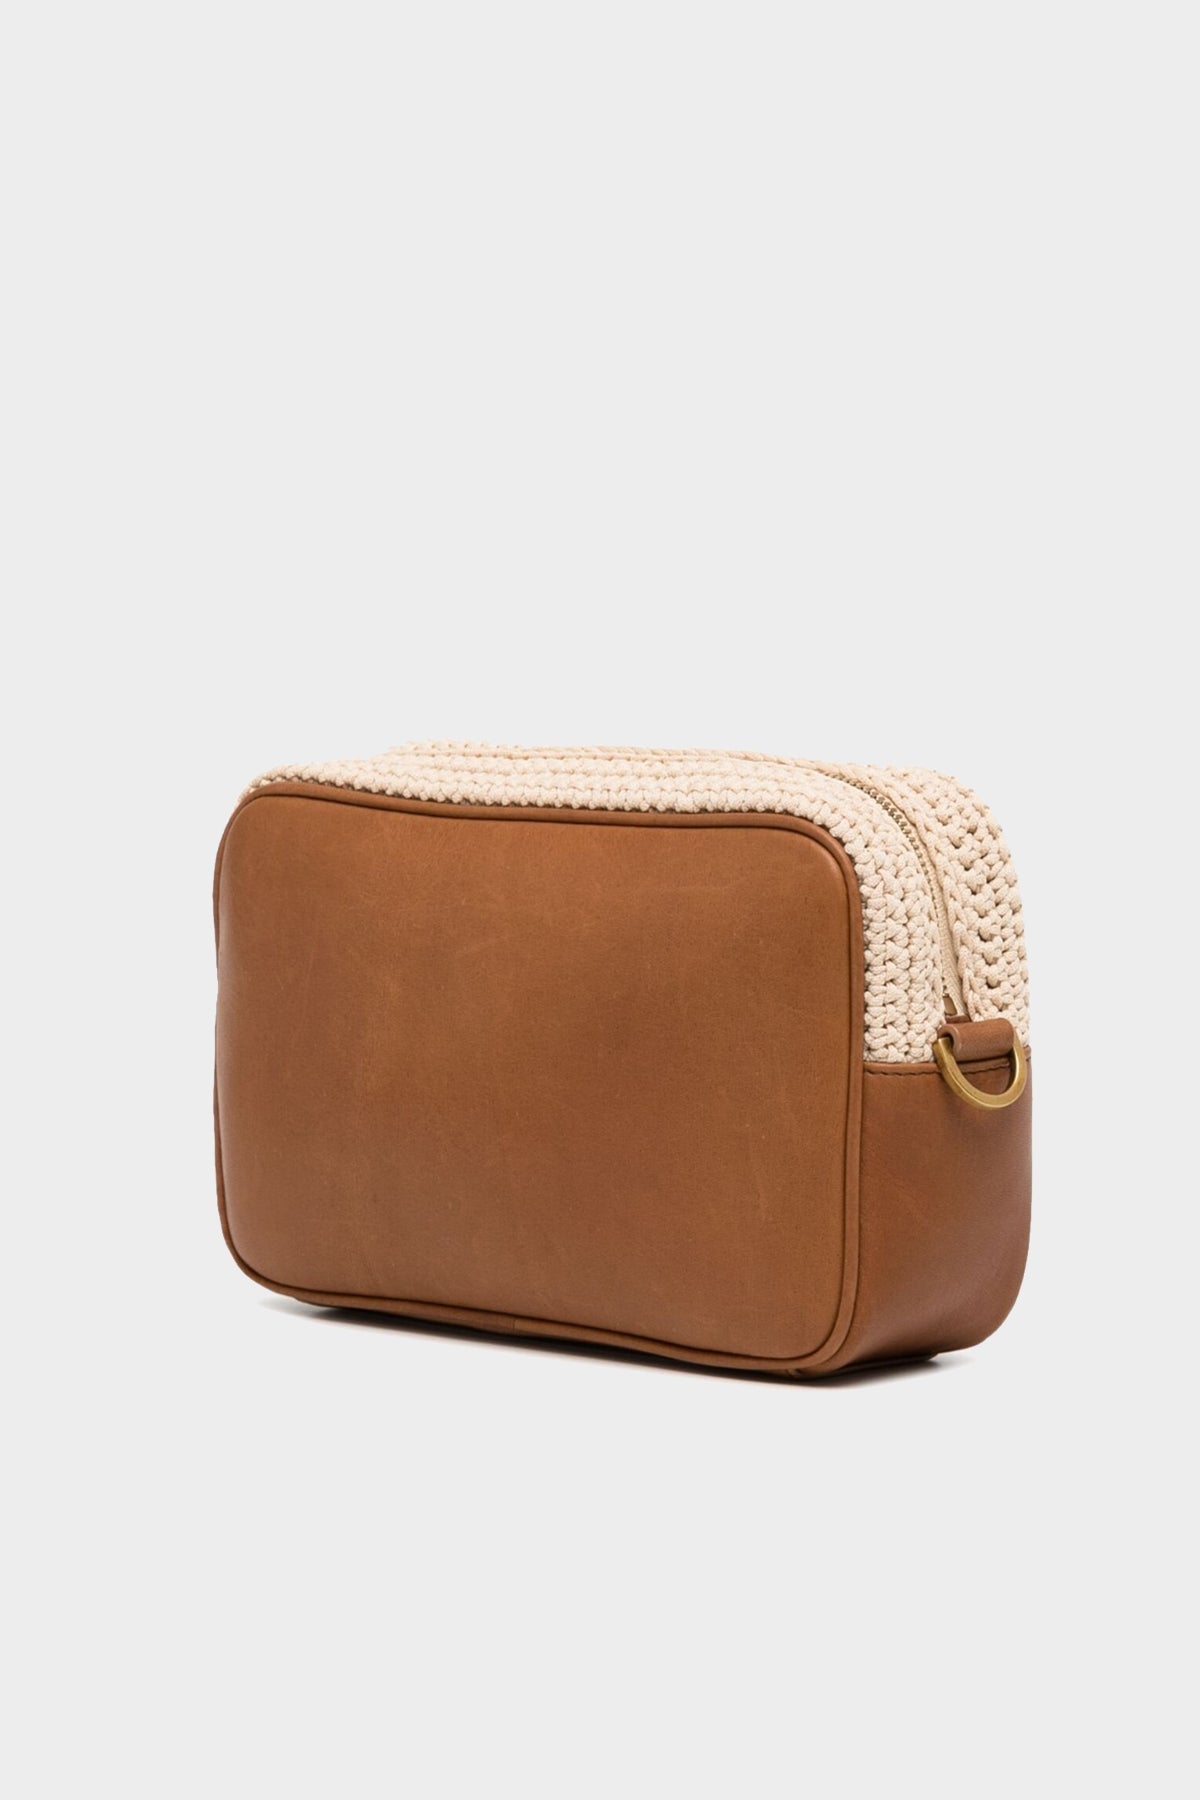 Star-Bag Crochet Body and Leather Shoulder Bag in Brown - shop-olivia.com